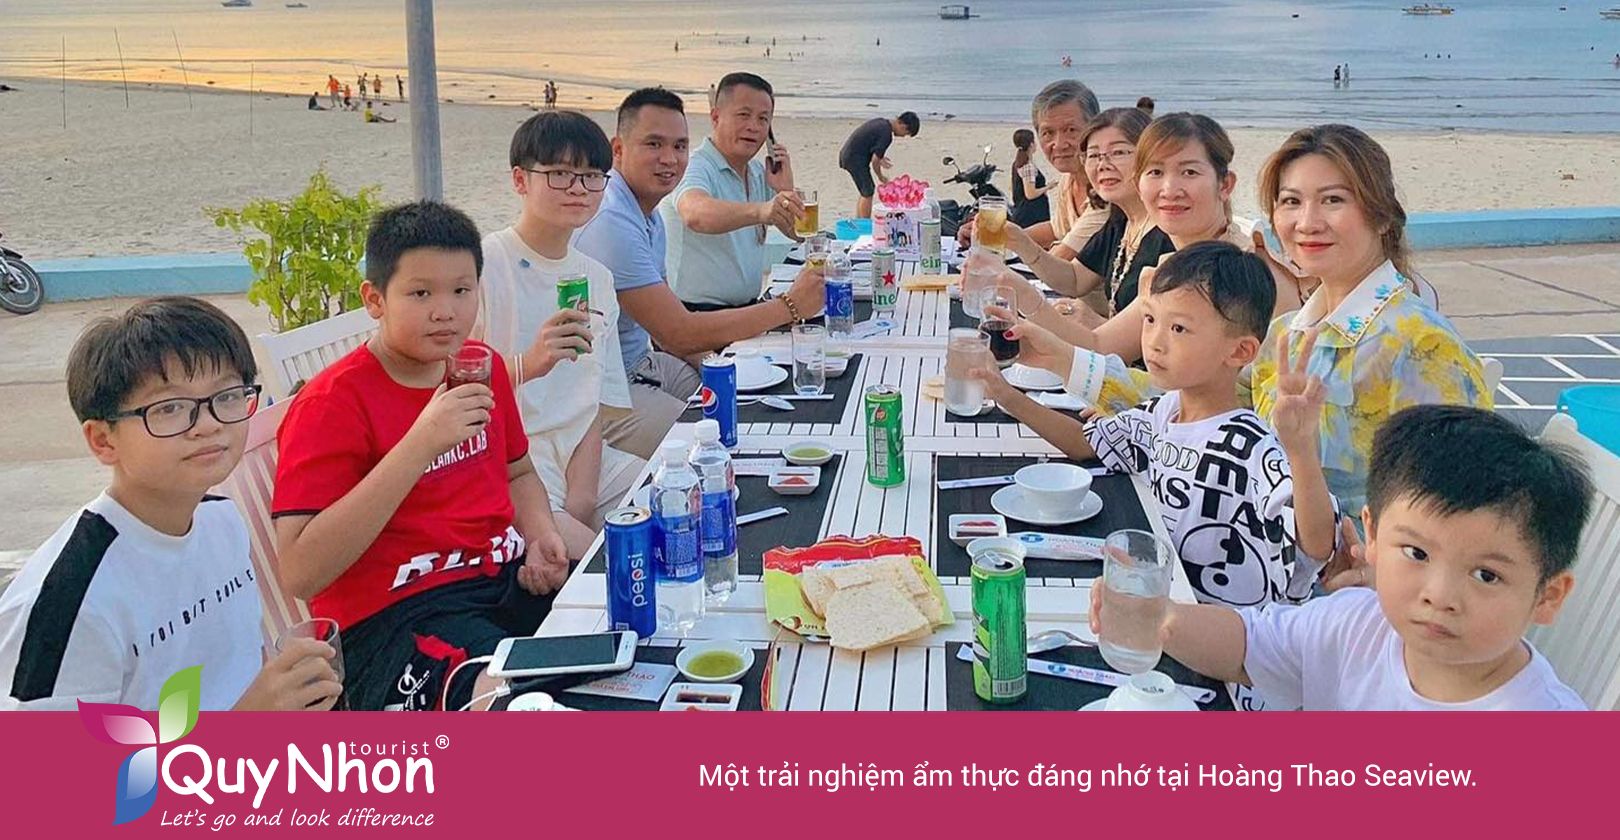 Một trải nghiệm ẩm thực đáng nhớ tại Hoàng Thao Seaview.